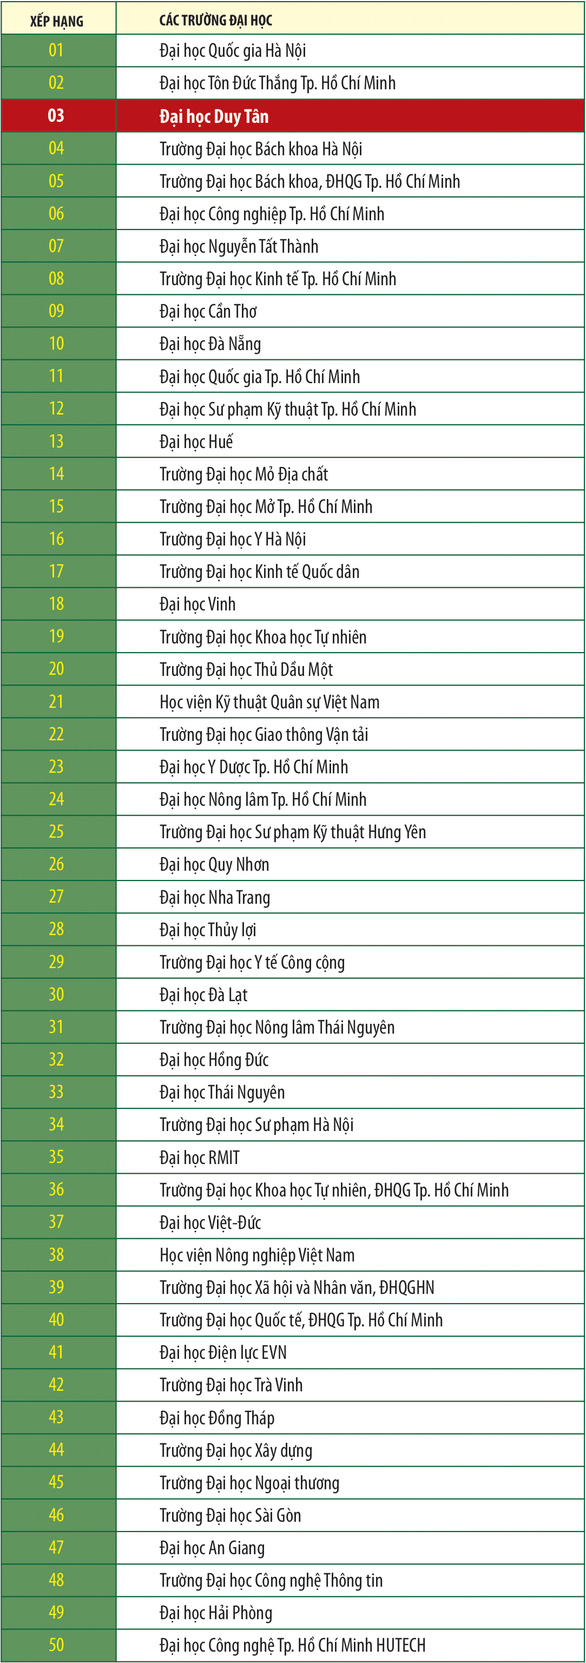 Các đại học Việt Nam trên bảng xếp hạng Webometrics